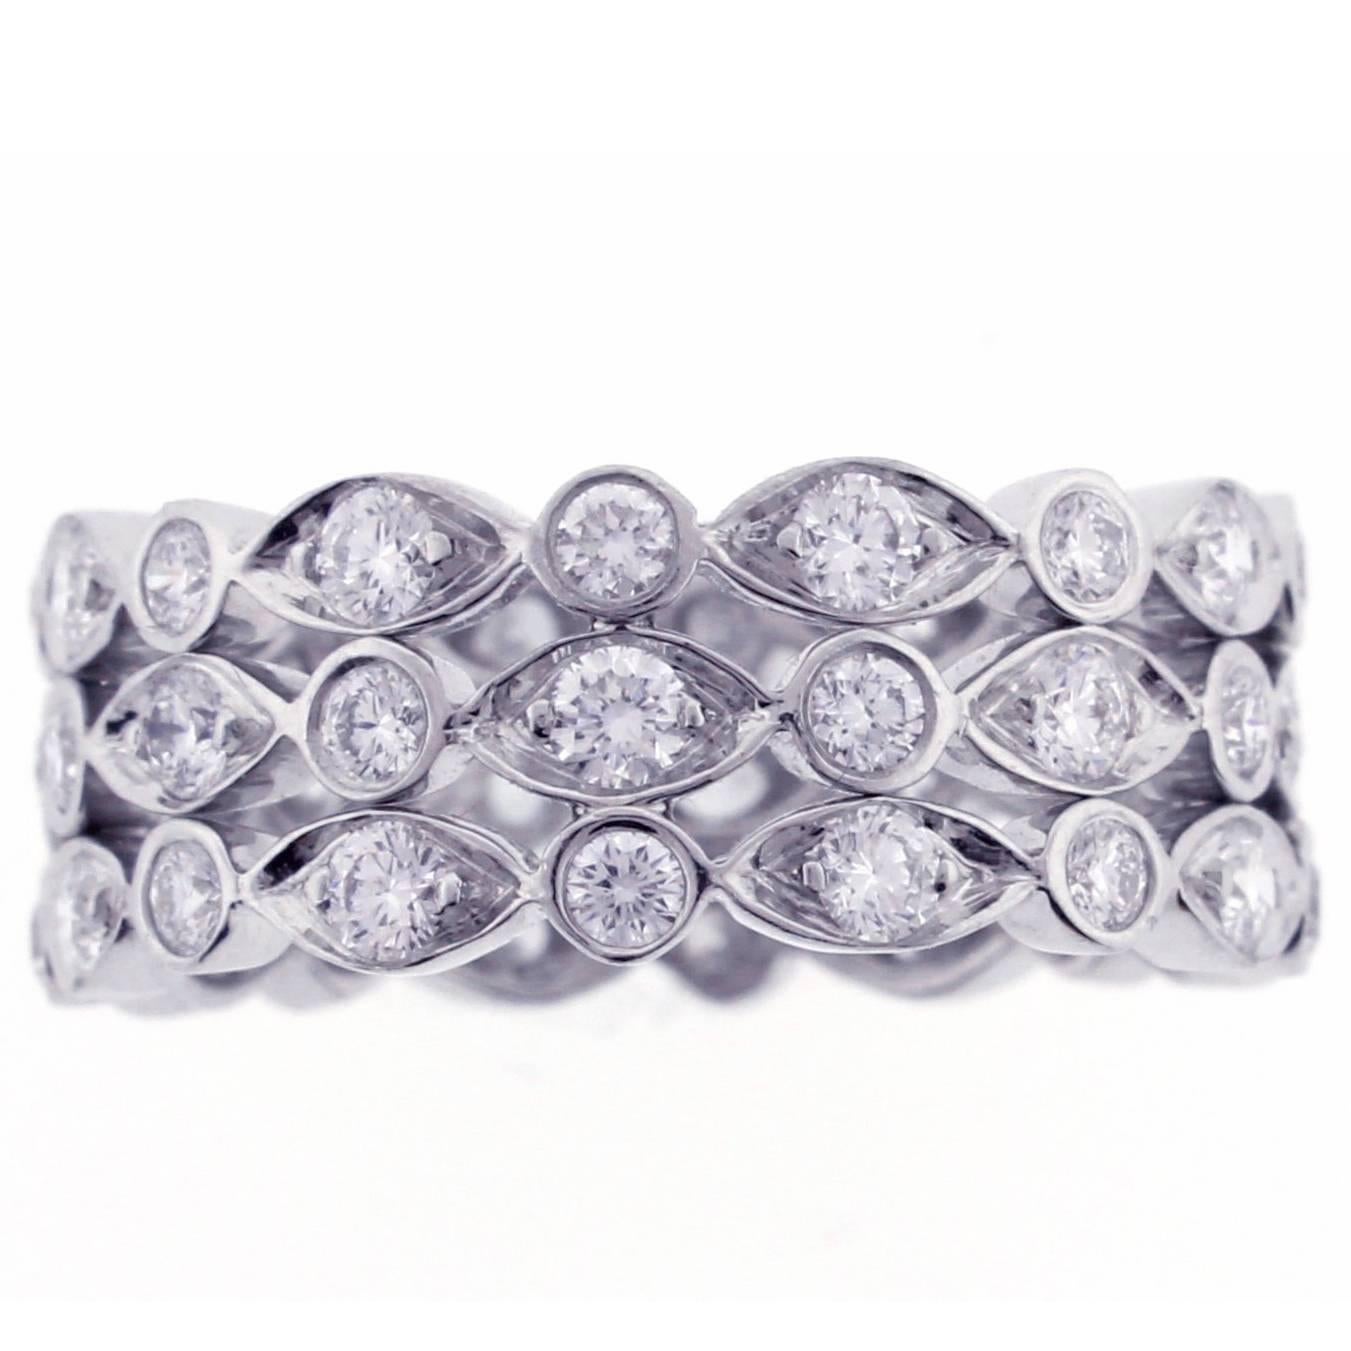  New Tiffany & Co Jazz Three Row Diamond Band Ring